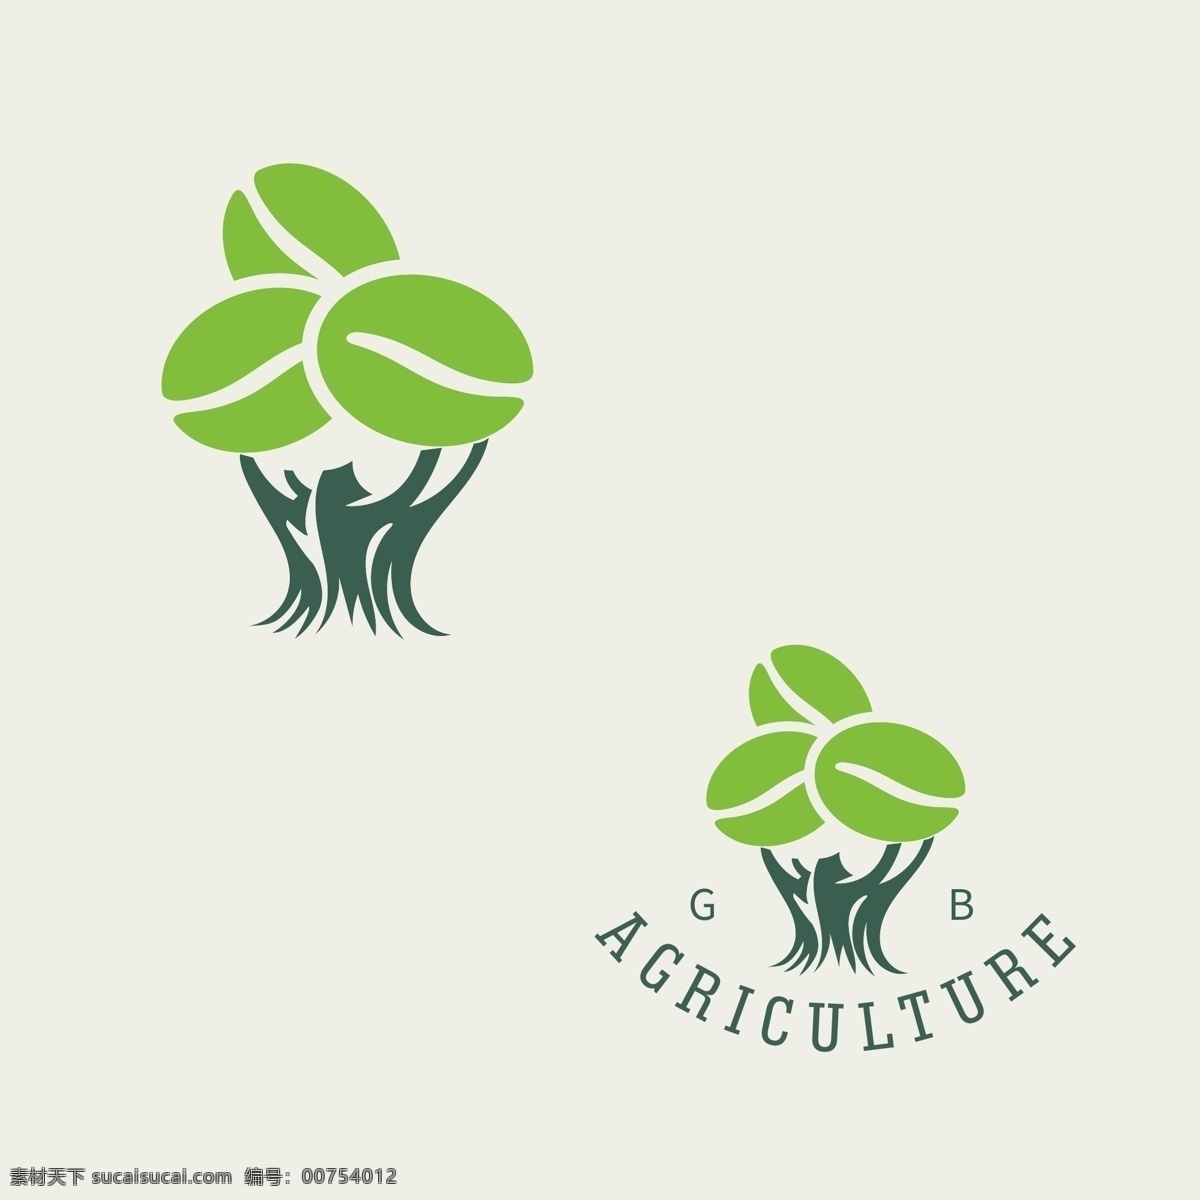 绿色logo 绿色环保图标 绿色环保 logo 生态环境保护 图标 绿叶叶子 绿色植物图标 环保标志 生态环保 环境保护 树叶logo 环保logo 按钮图标